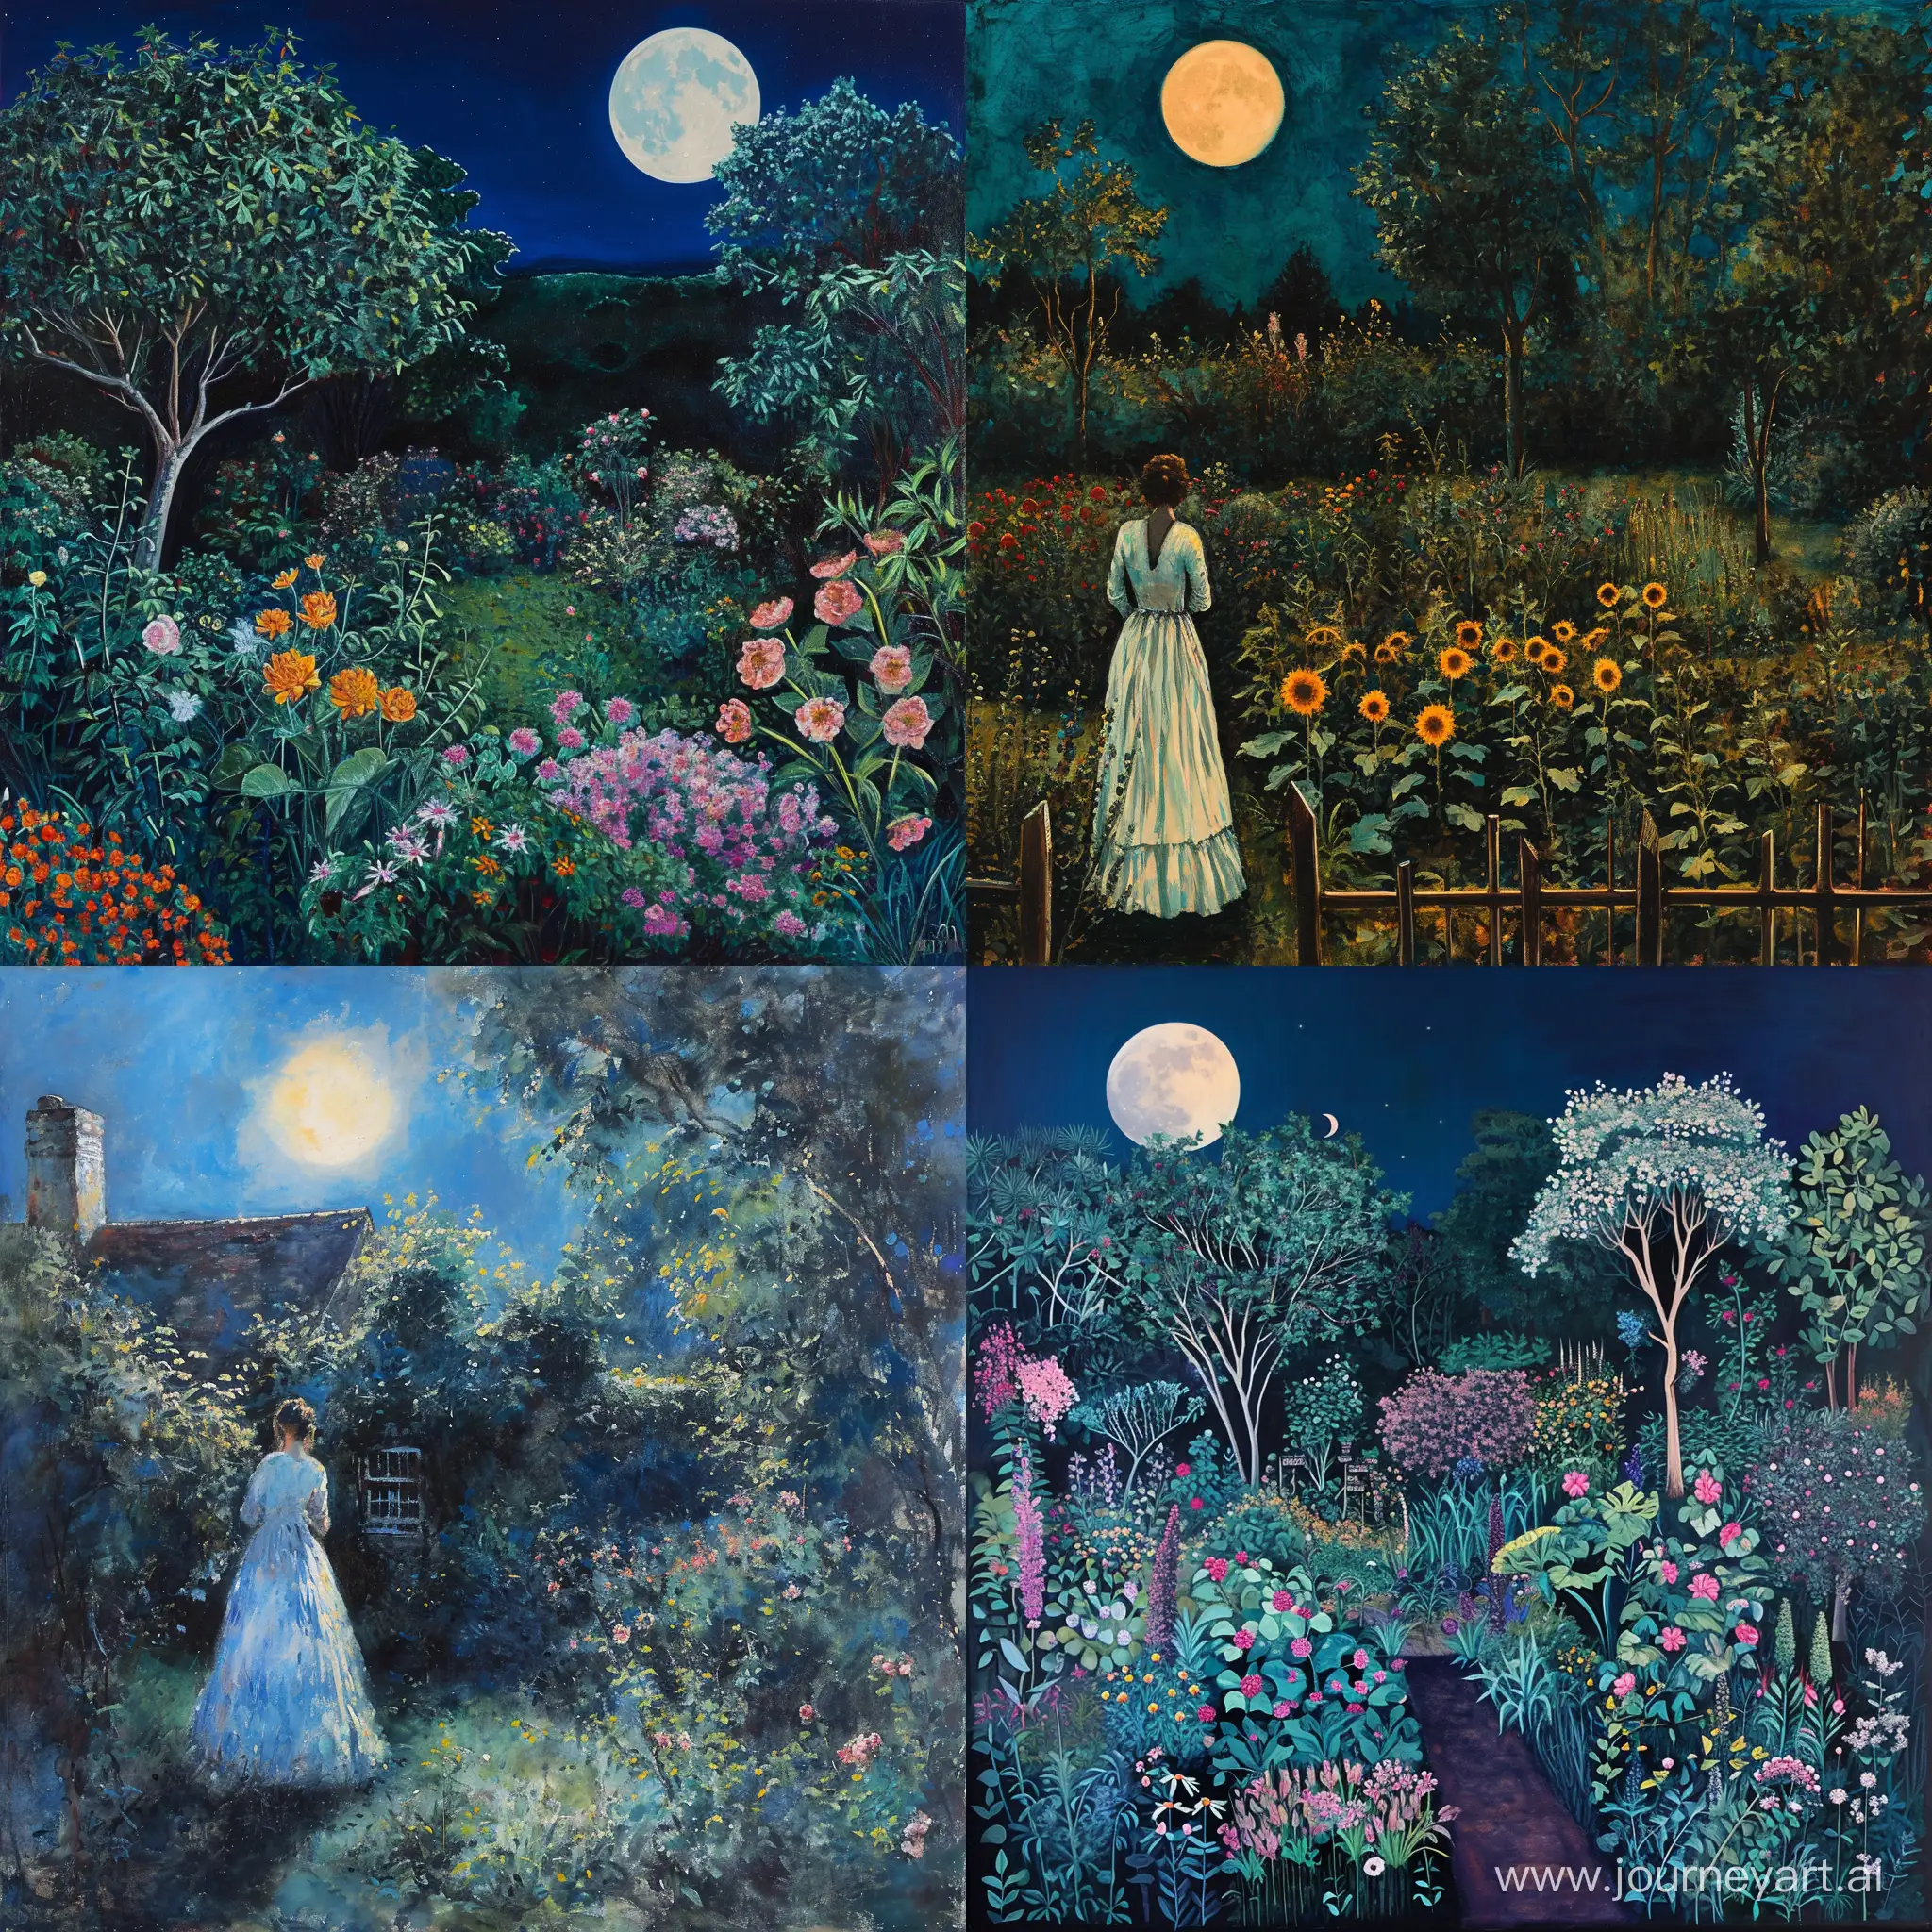 Moonlit-Garden-Scene-with-Vertical-Composition